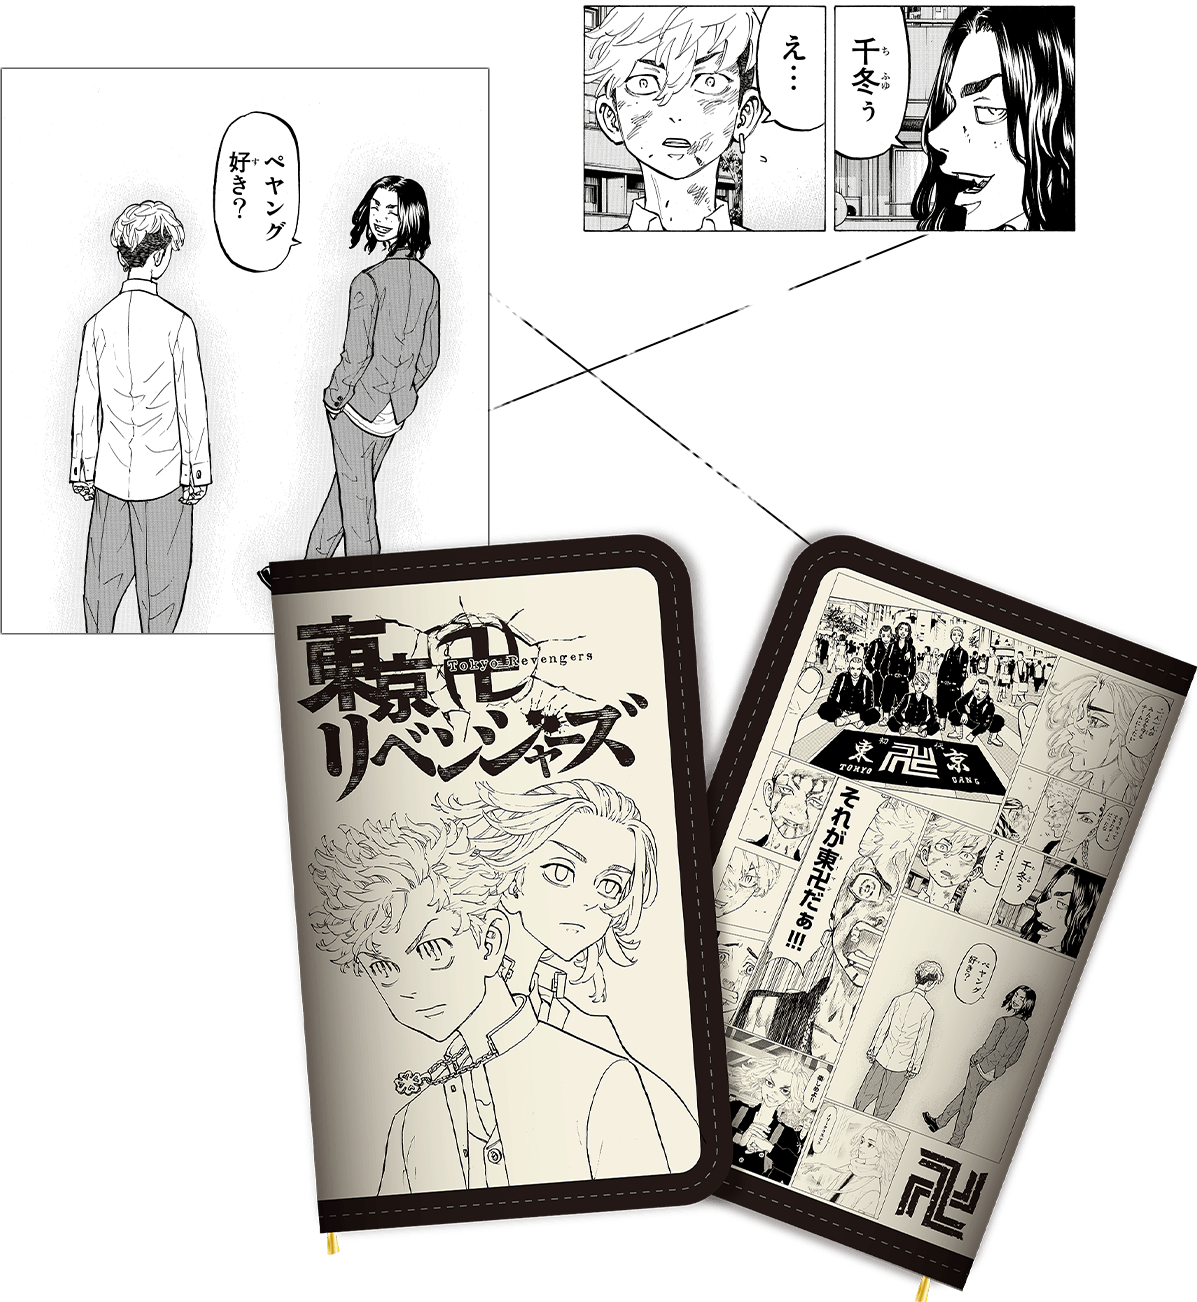 東京卍リベンジャーズ 描き下ろし新体験展 最後の世界線 公式グッズ 